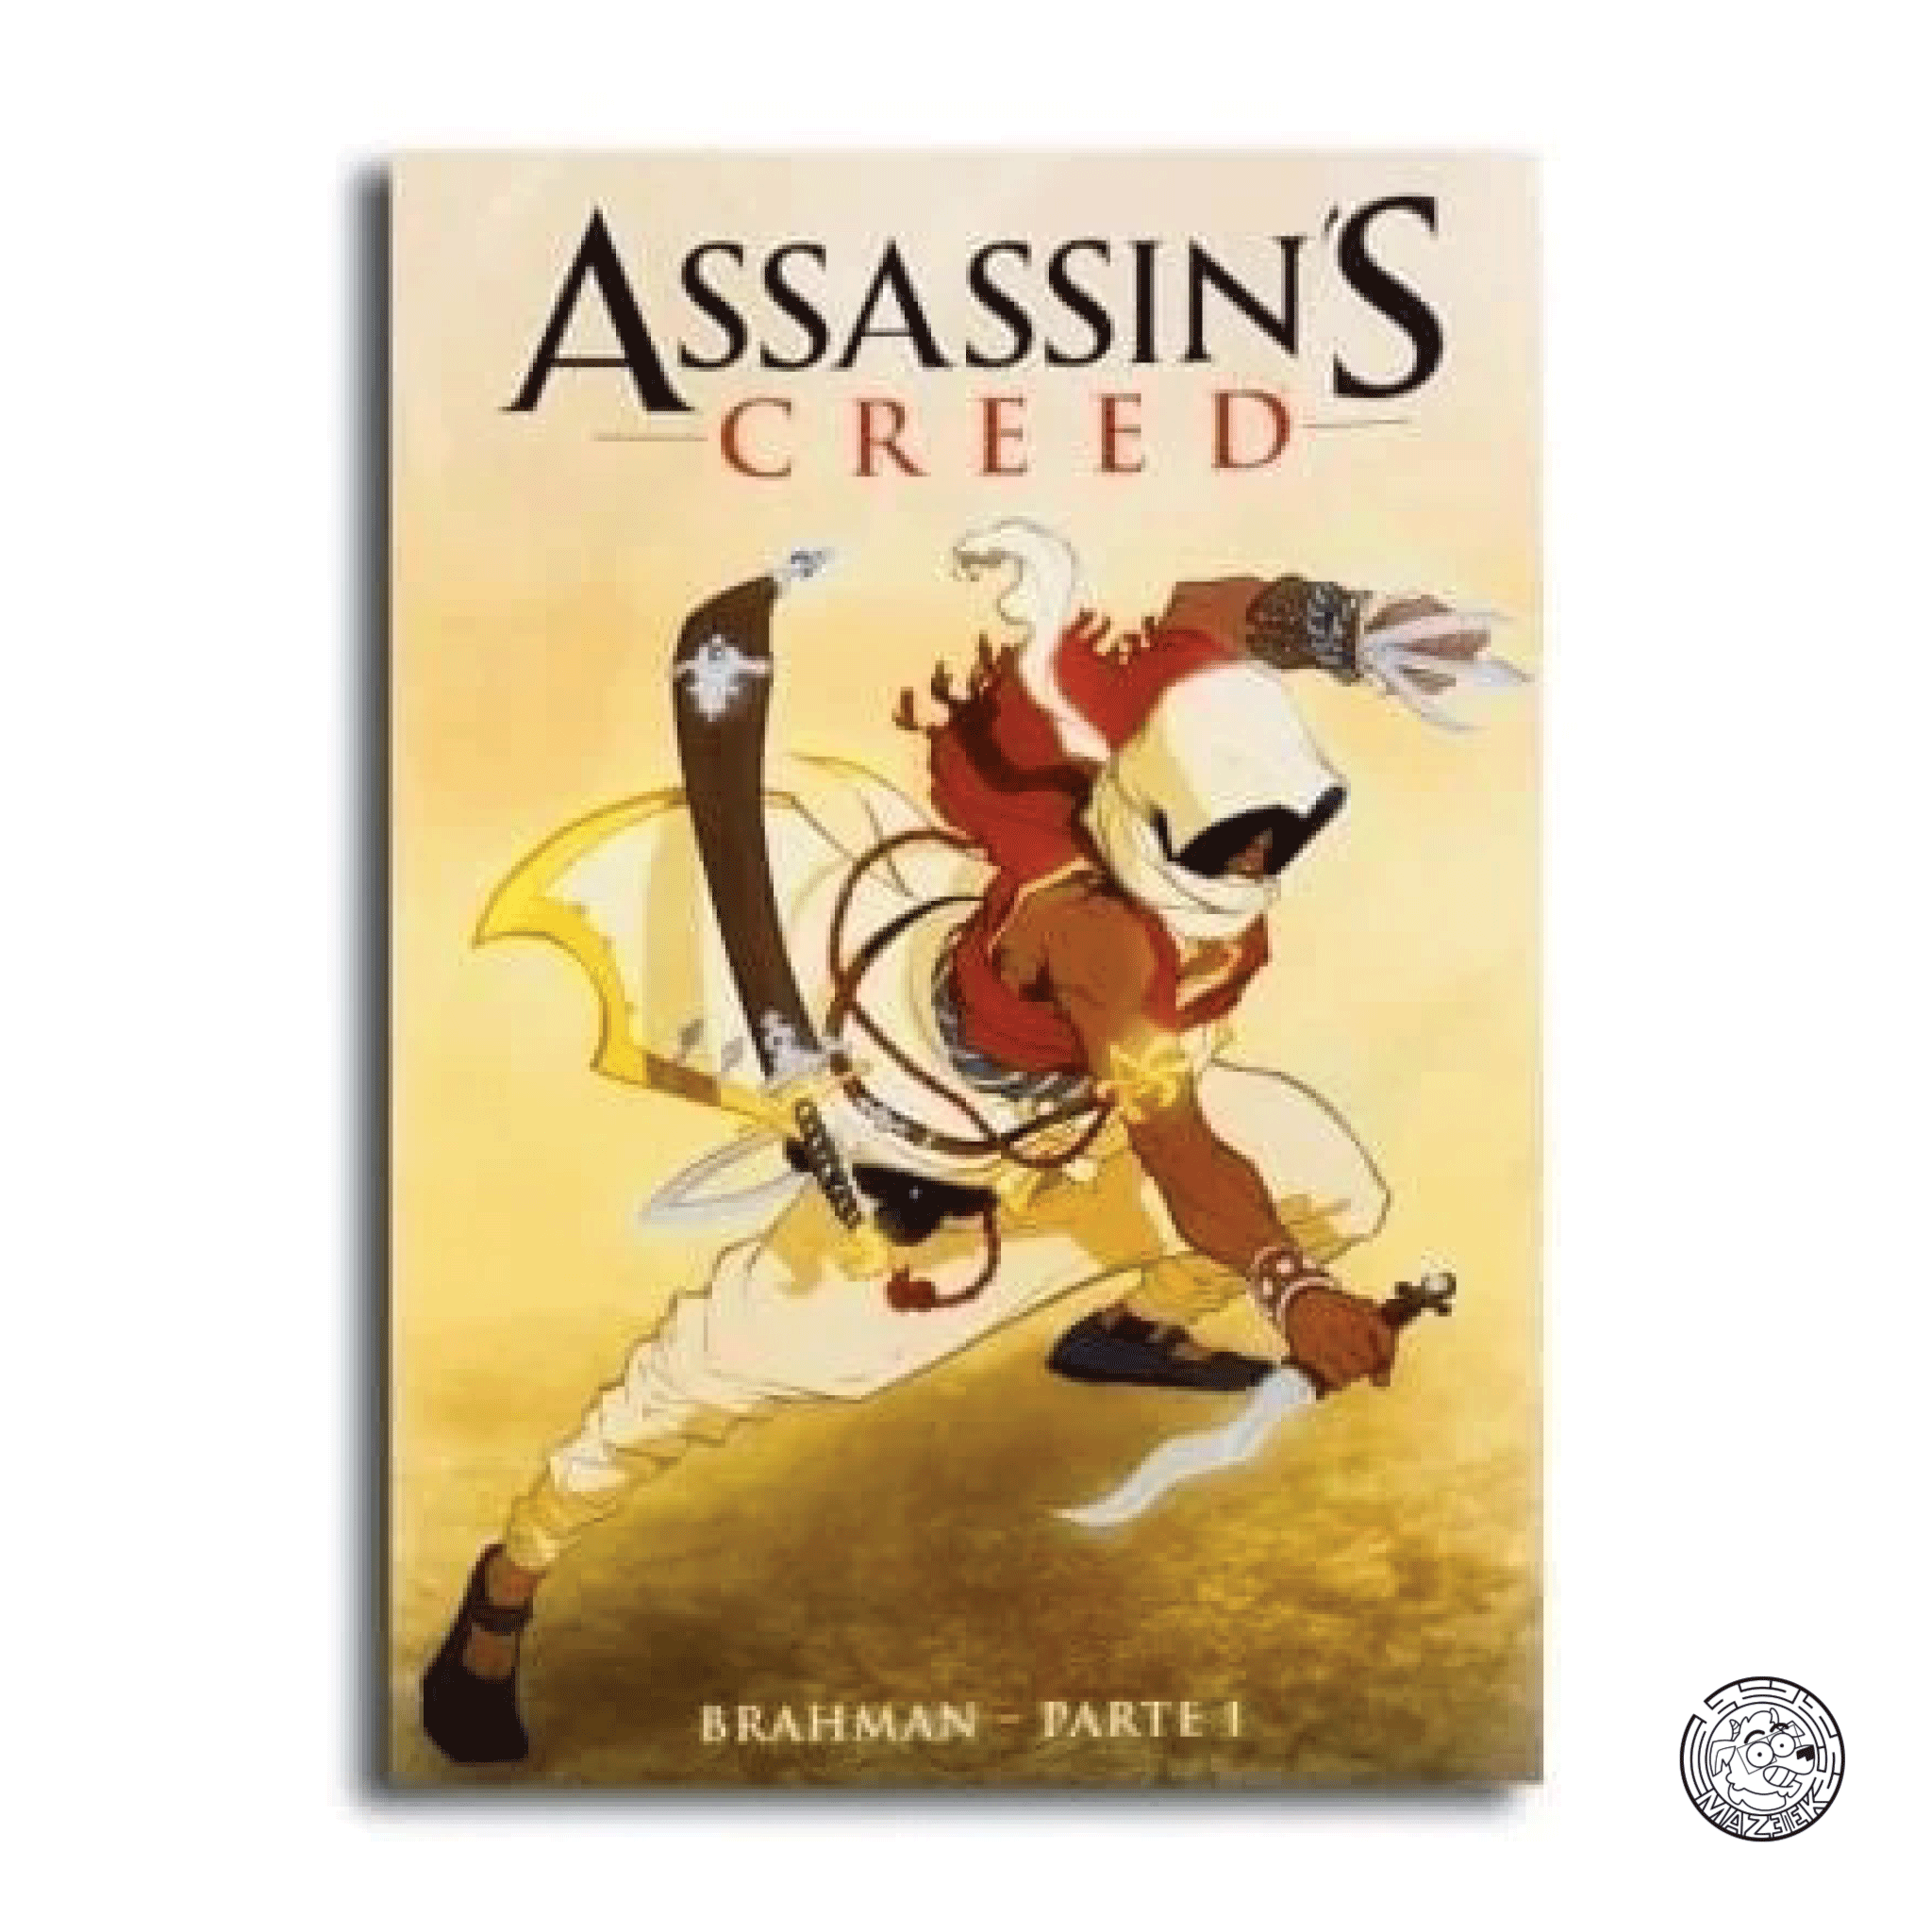 Assassin's Creed (Corriere dello Sport) Brahman - Part 1